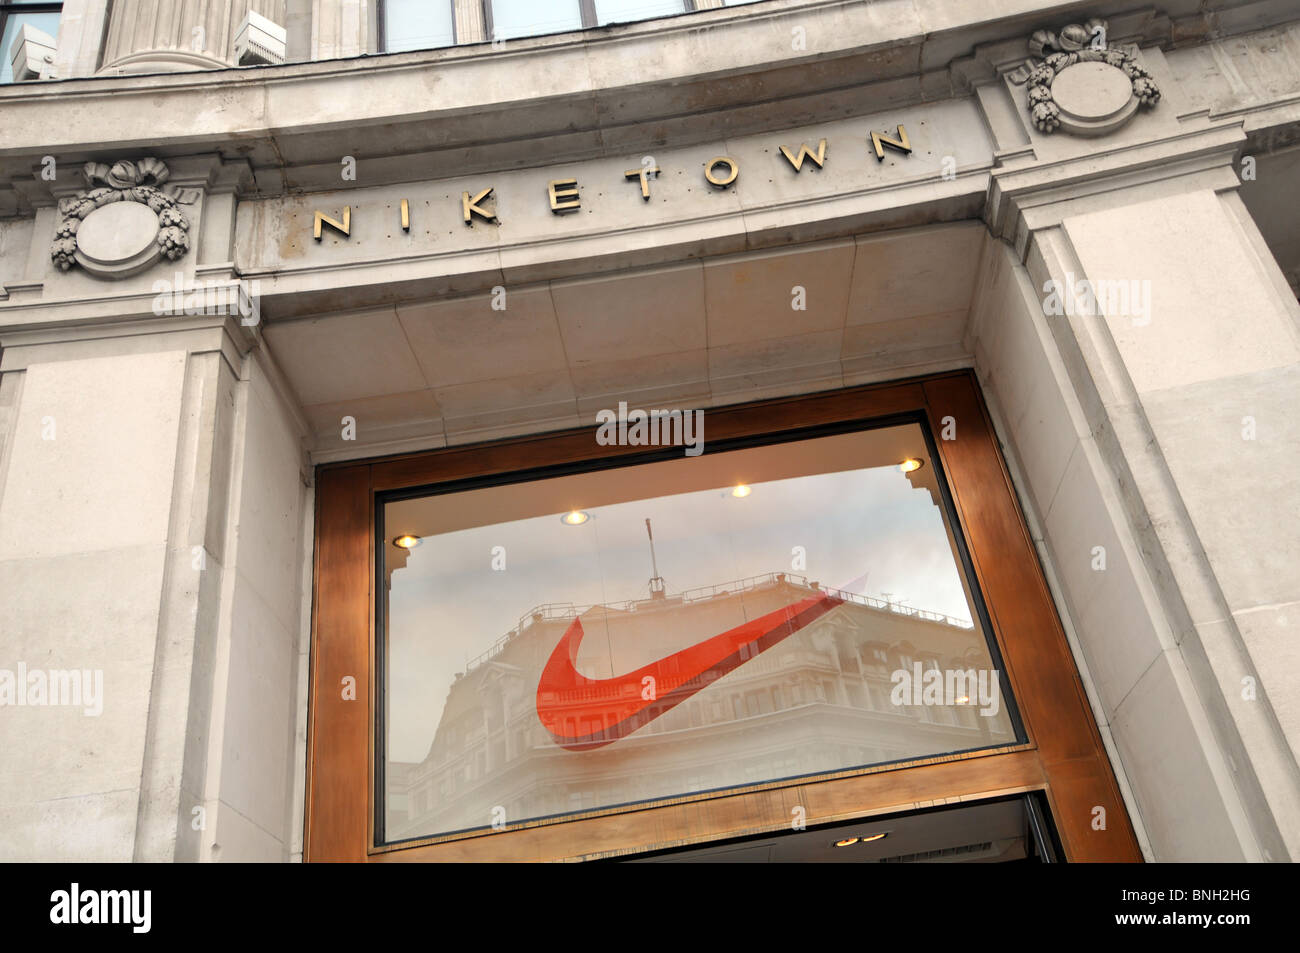 Niketown, Oxford Street, London, England Stockfoto